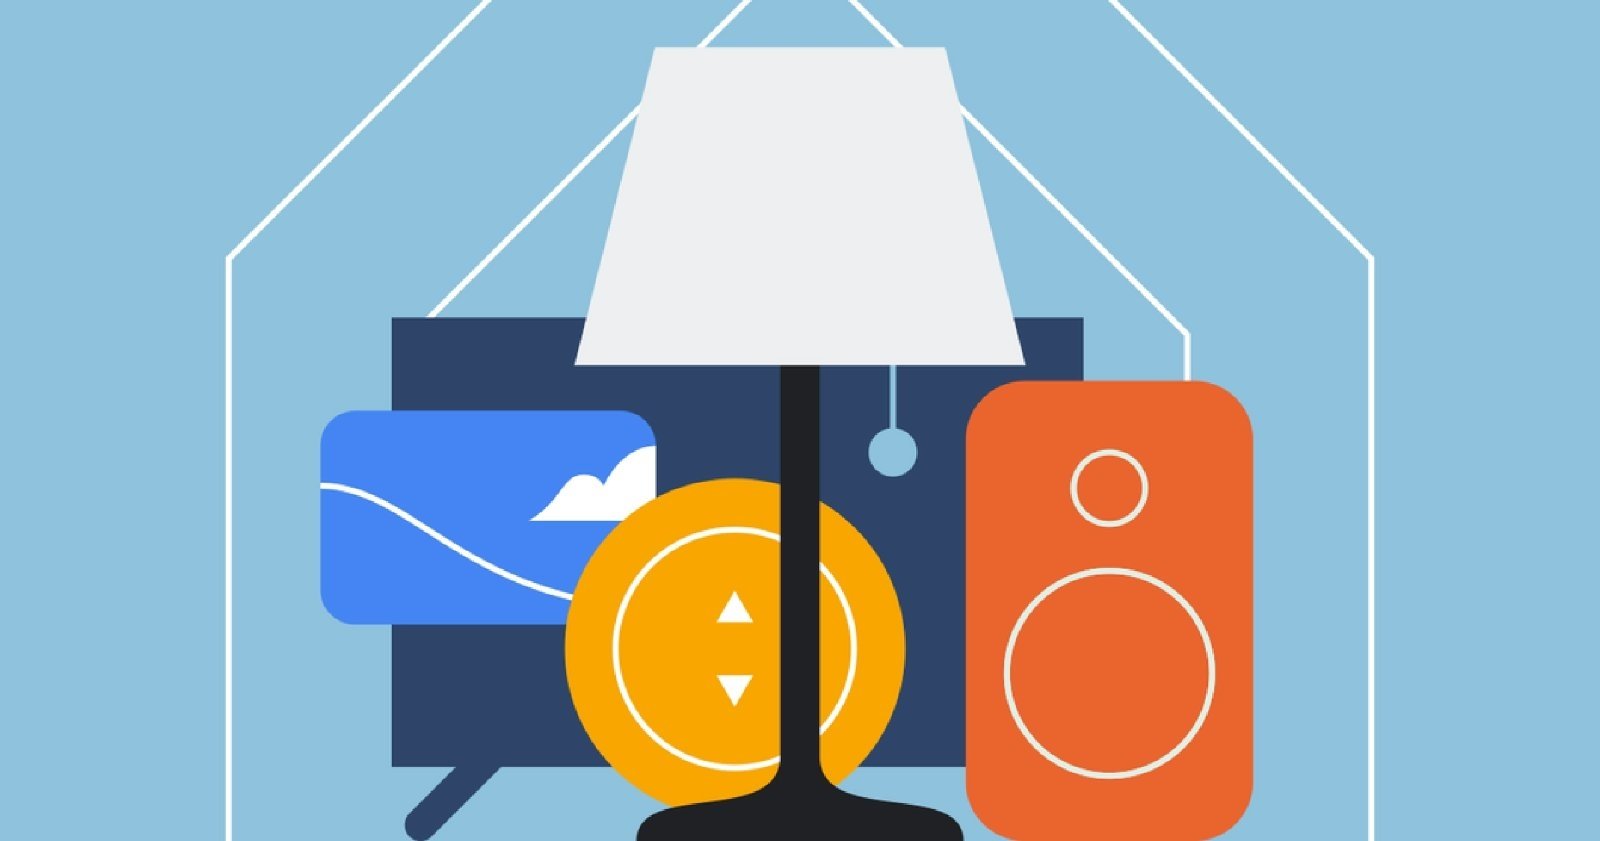 Las 4 novedades de Google Home para el hogar inteligente anunciadas en el Google I/O 2021